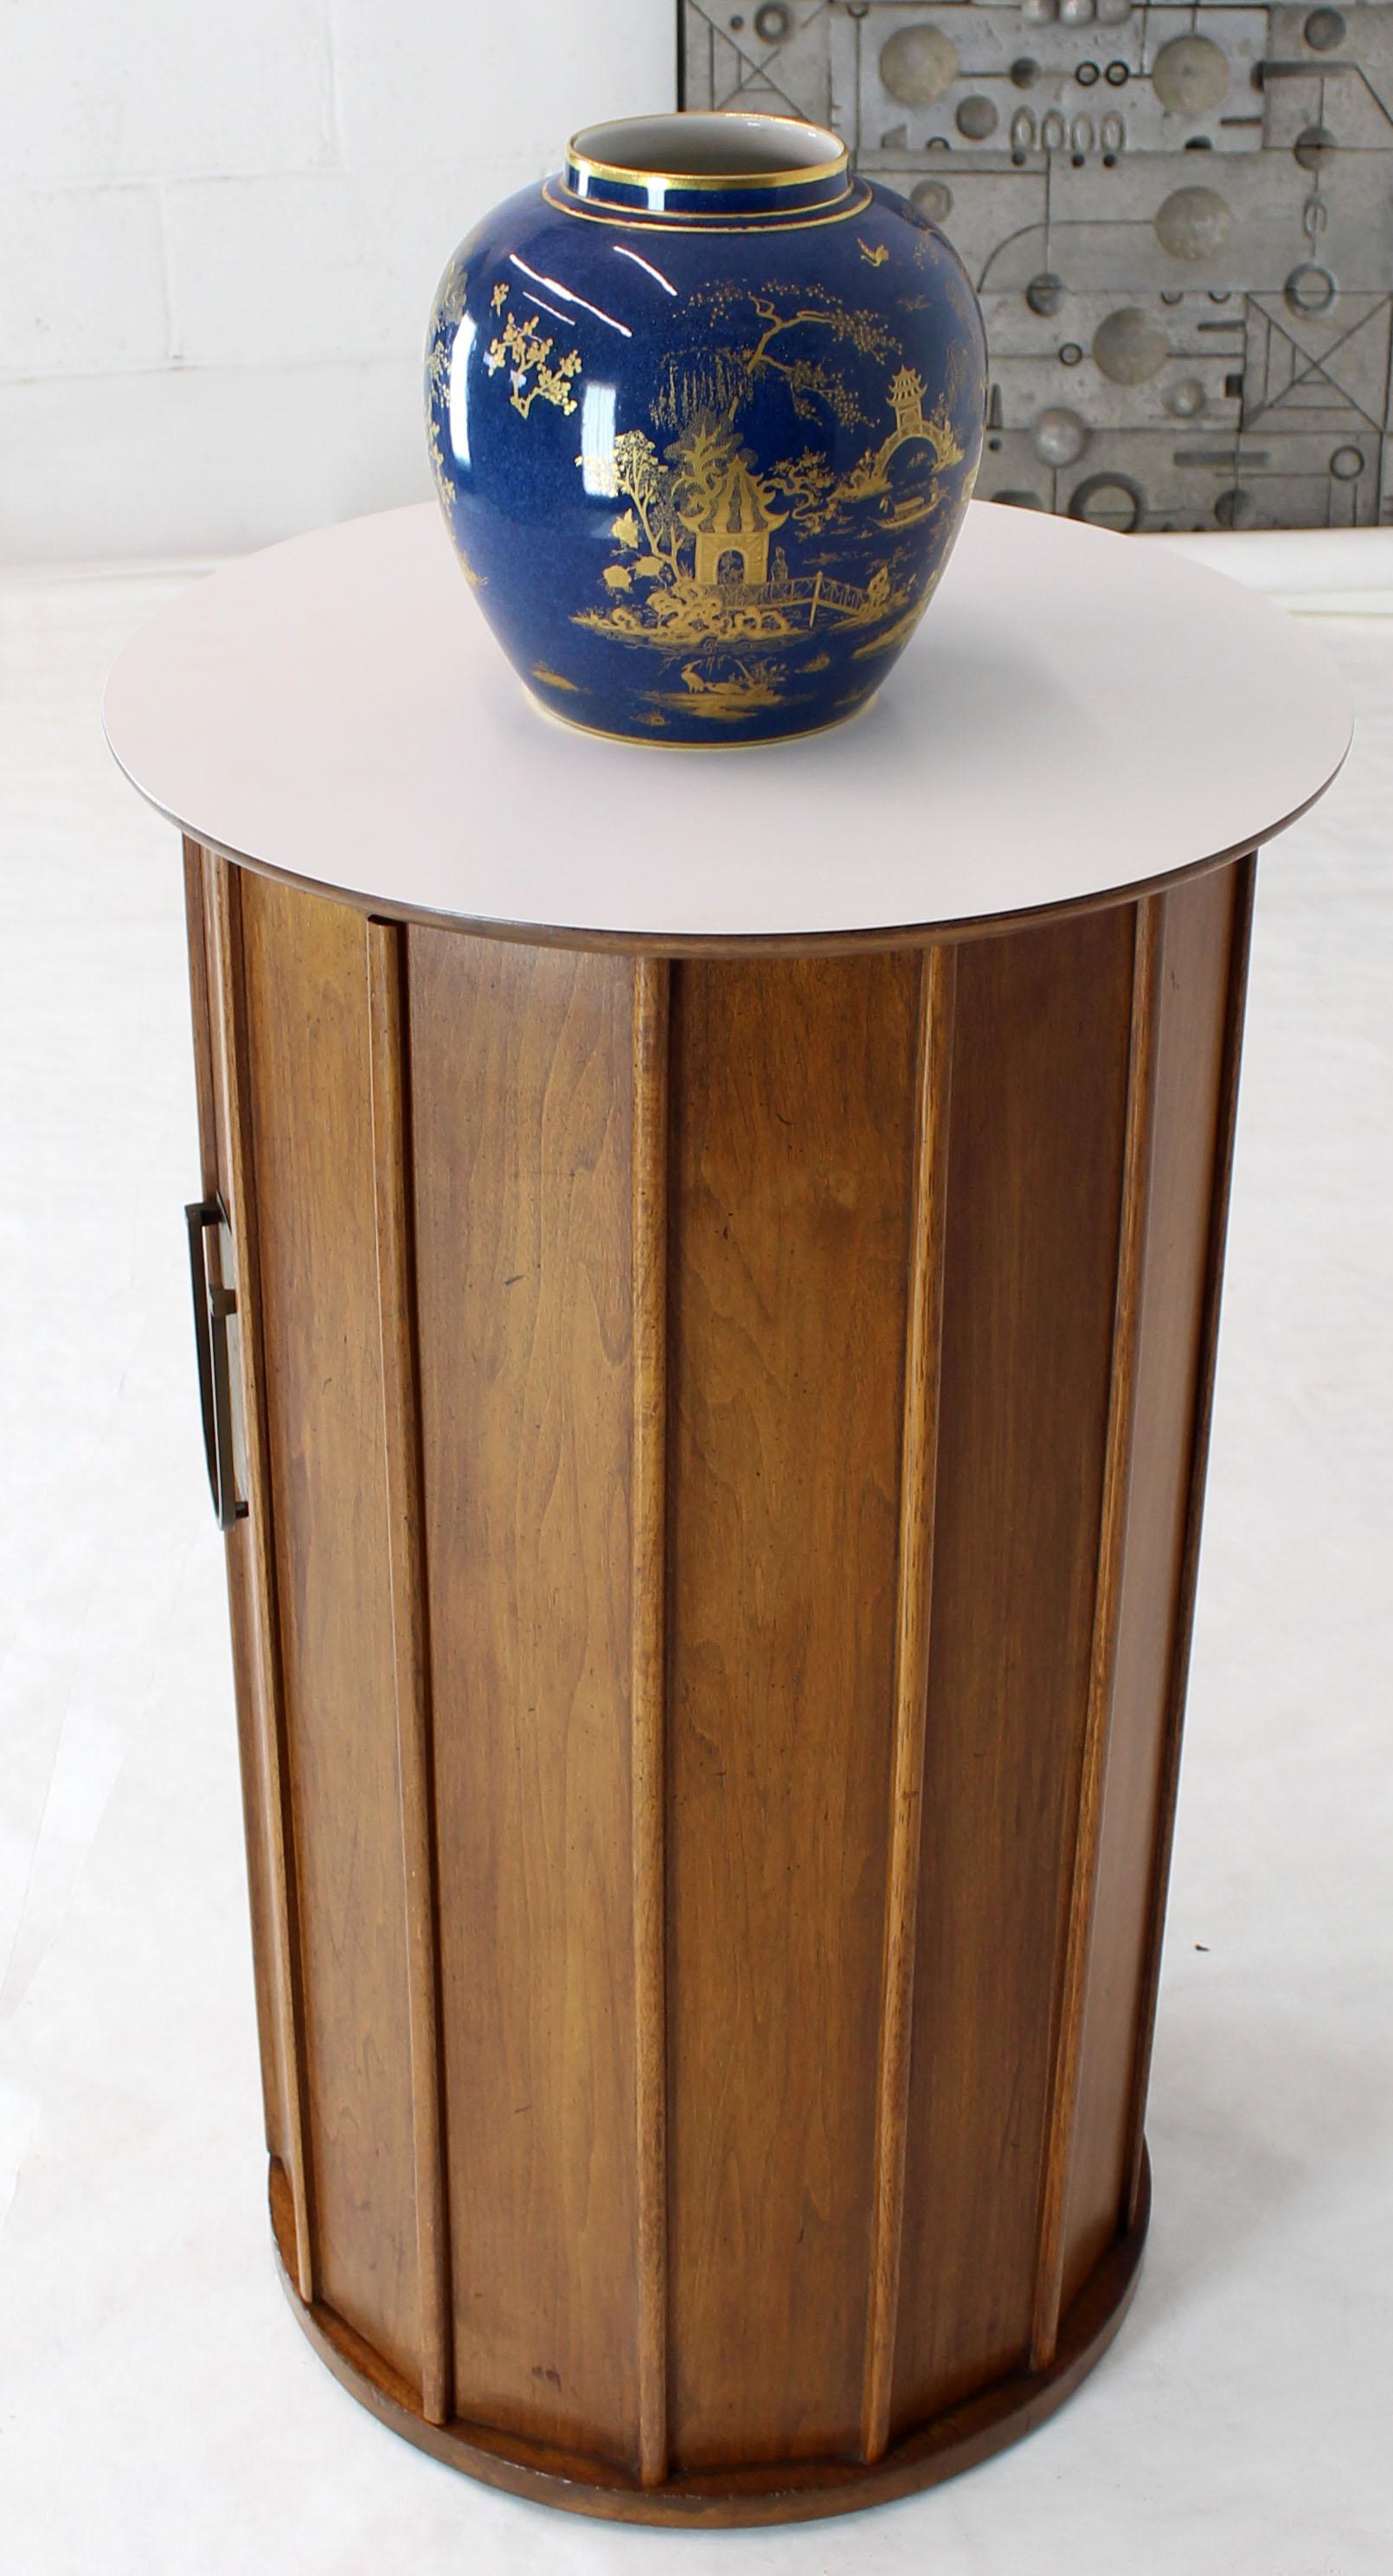 20th Century Round Cylinder Shape Pedestal Bar Cabinet Storage Cabinet with Brass Hardware